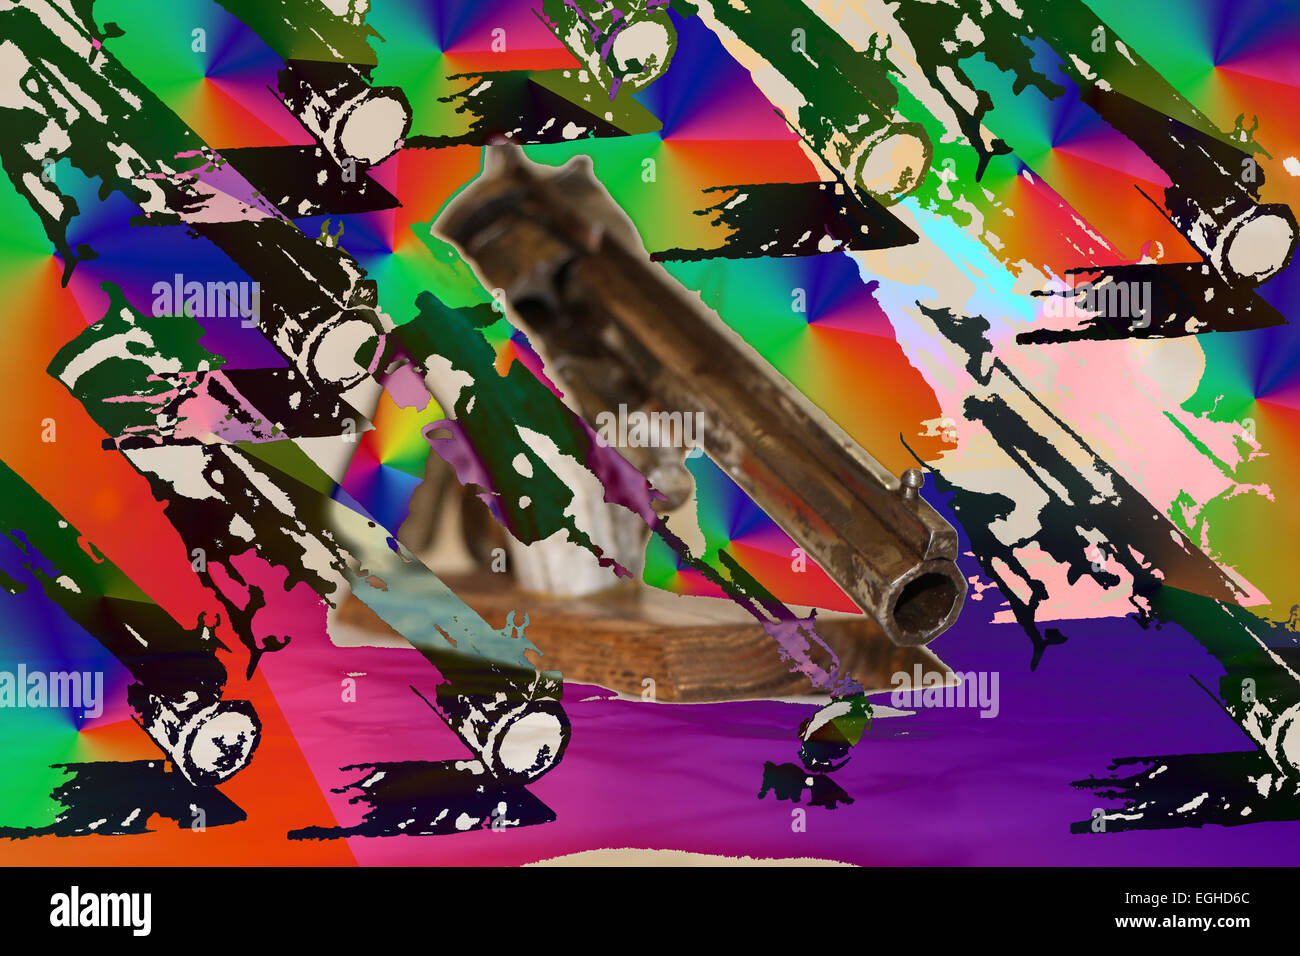 architektonisches Detail Hintergrund Waffen Nahaufnahme Farbe Bild digital zusammengesetzte Dämmerung vorgestellten Pistole Pistolen horizontale ein lila Rauchen Stockfoto